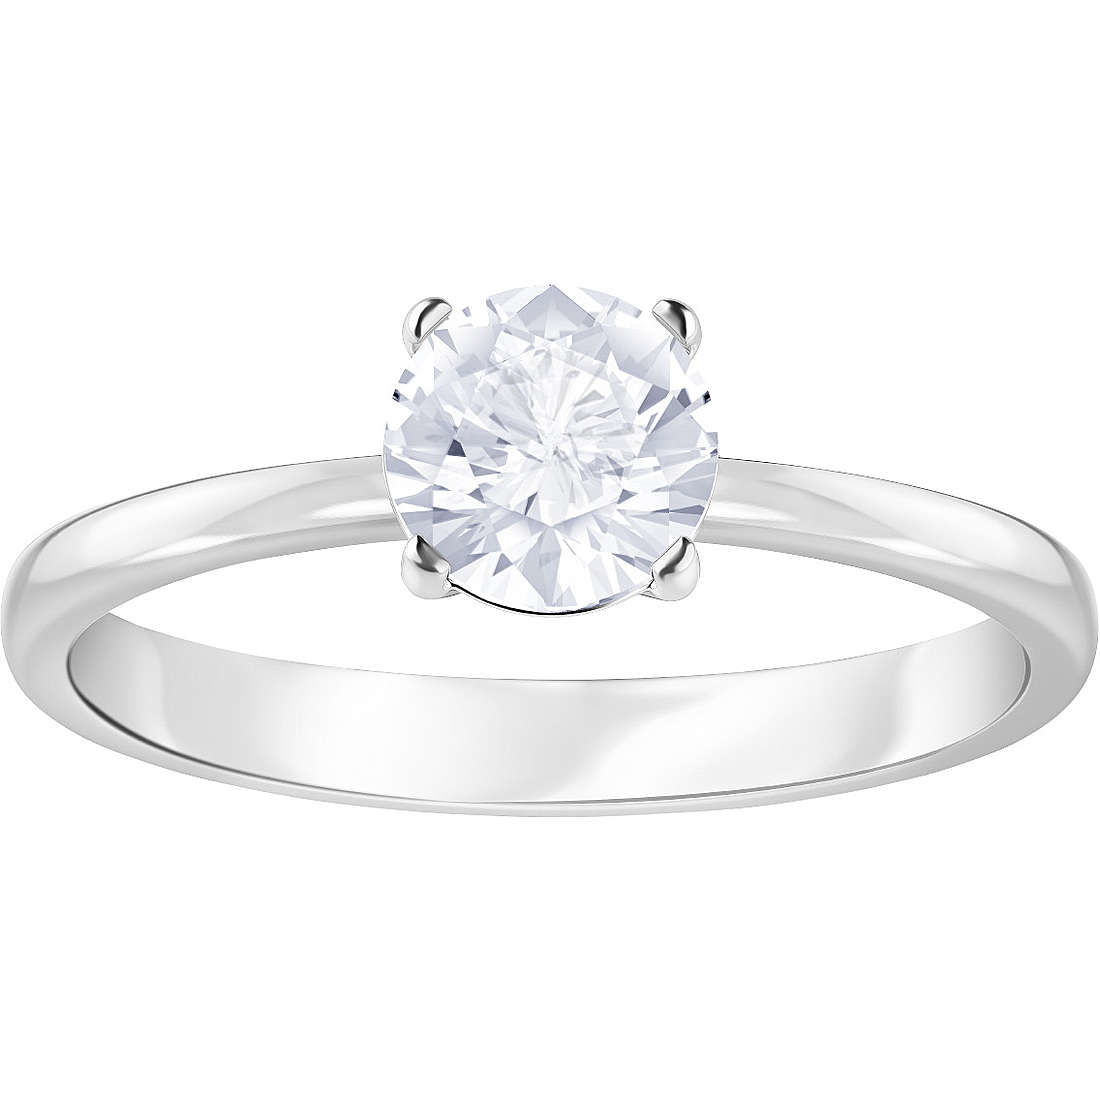 anello donna gioielli Swarovski Attract Round 5402429